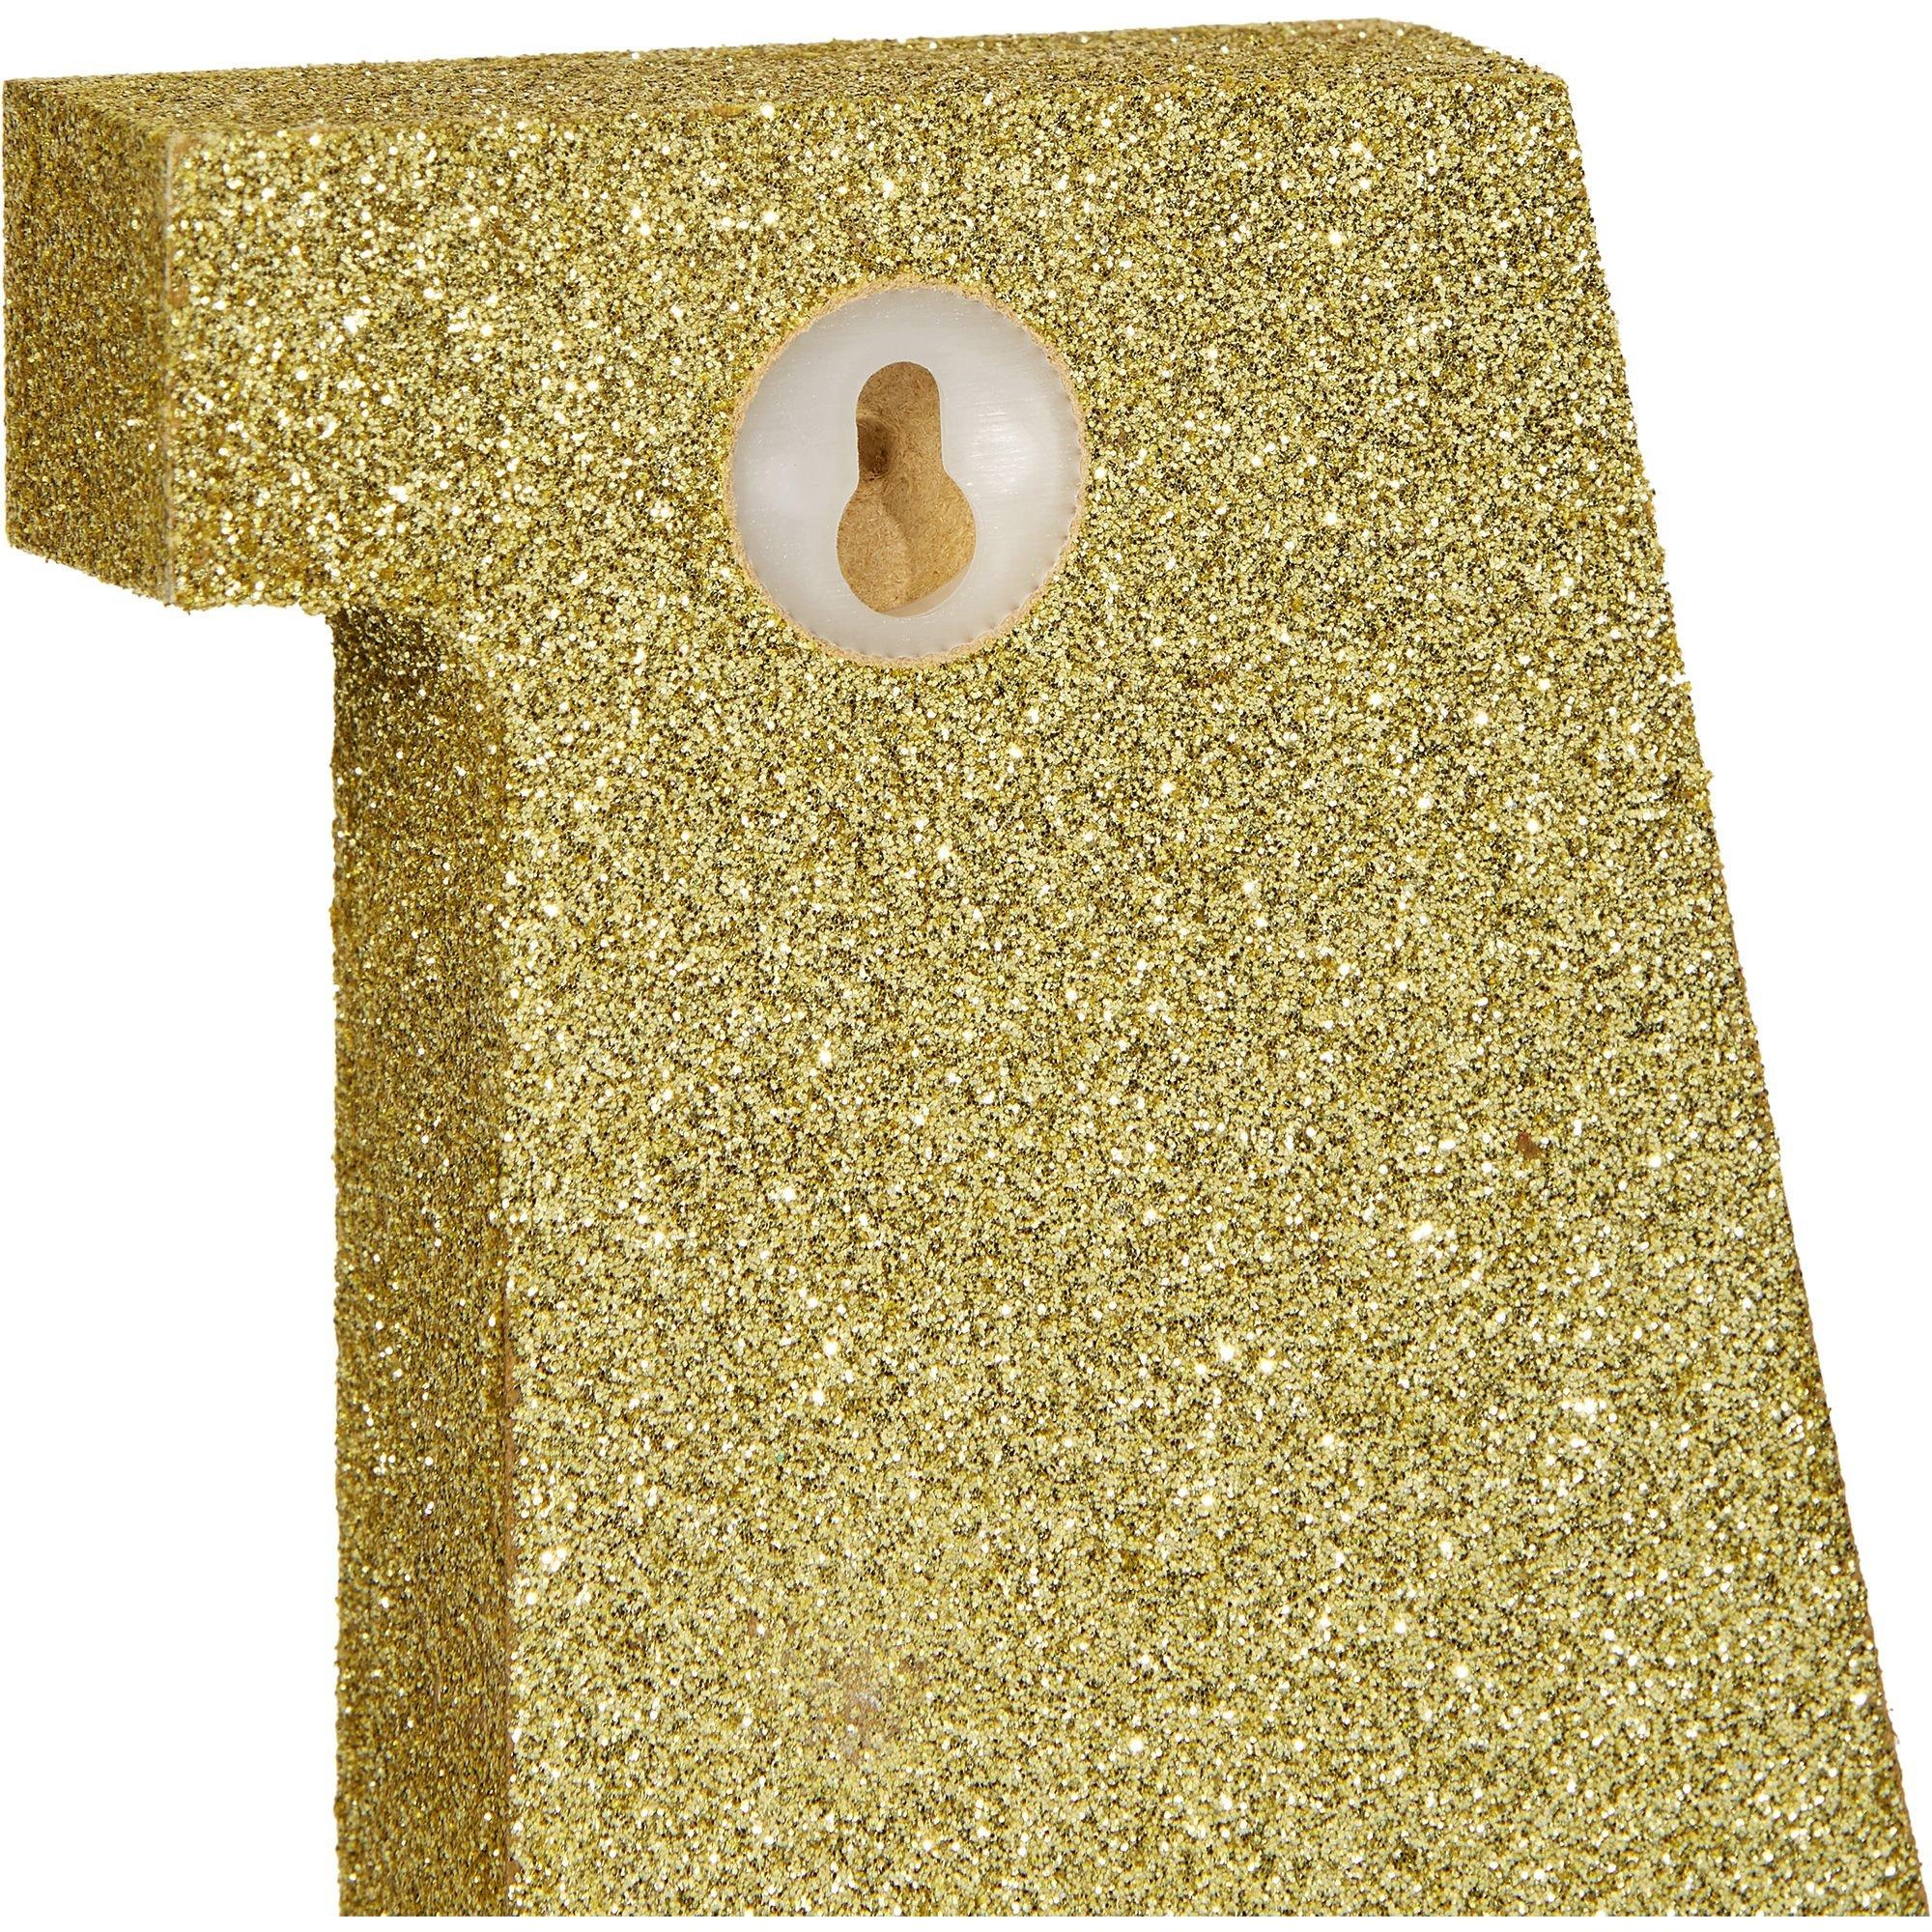 Glitter Gold Letter J Sign